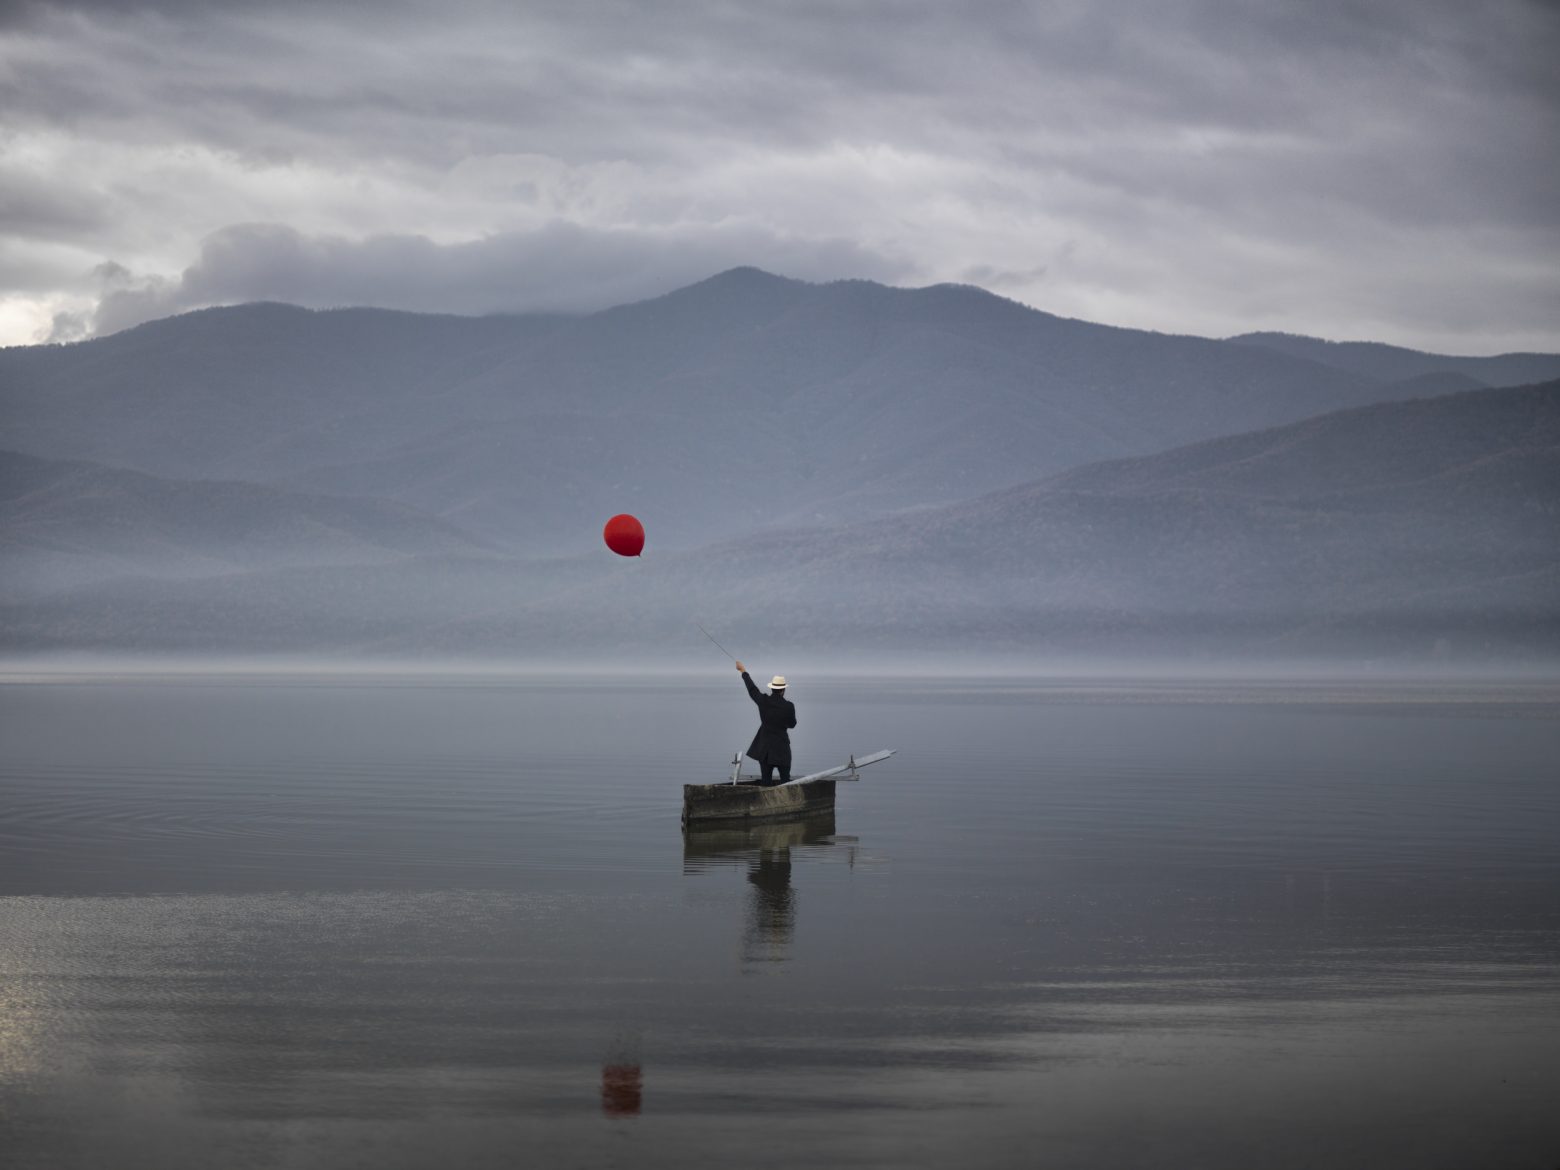 Λίμνη Κερκίνης, τότε και τώρα - Μια σπουδαία έκθεση φωτογραφίας